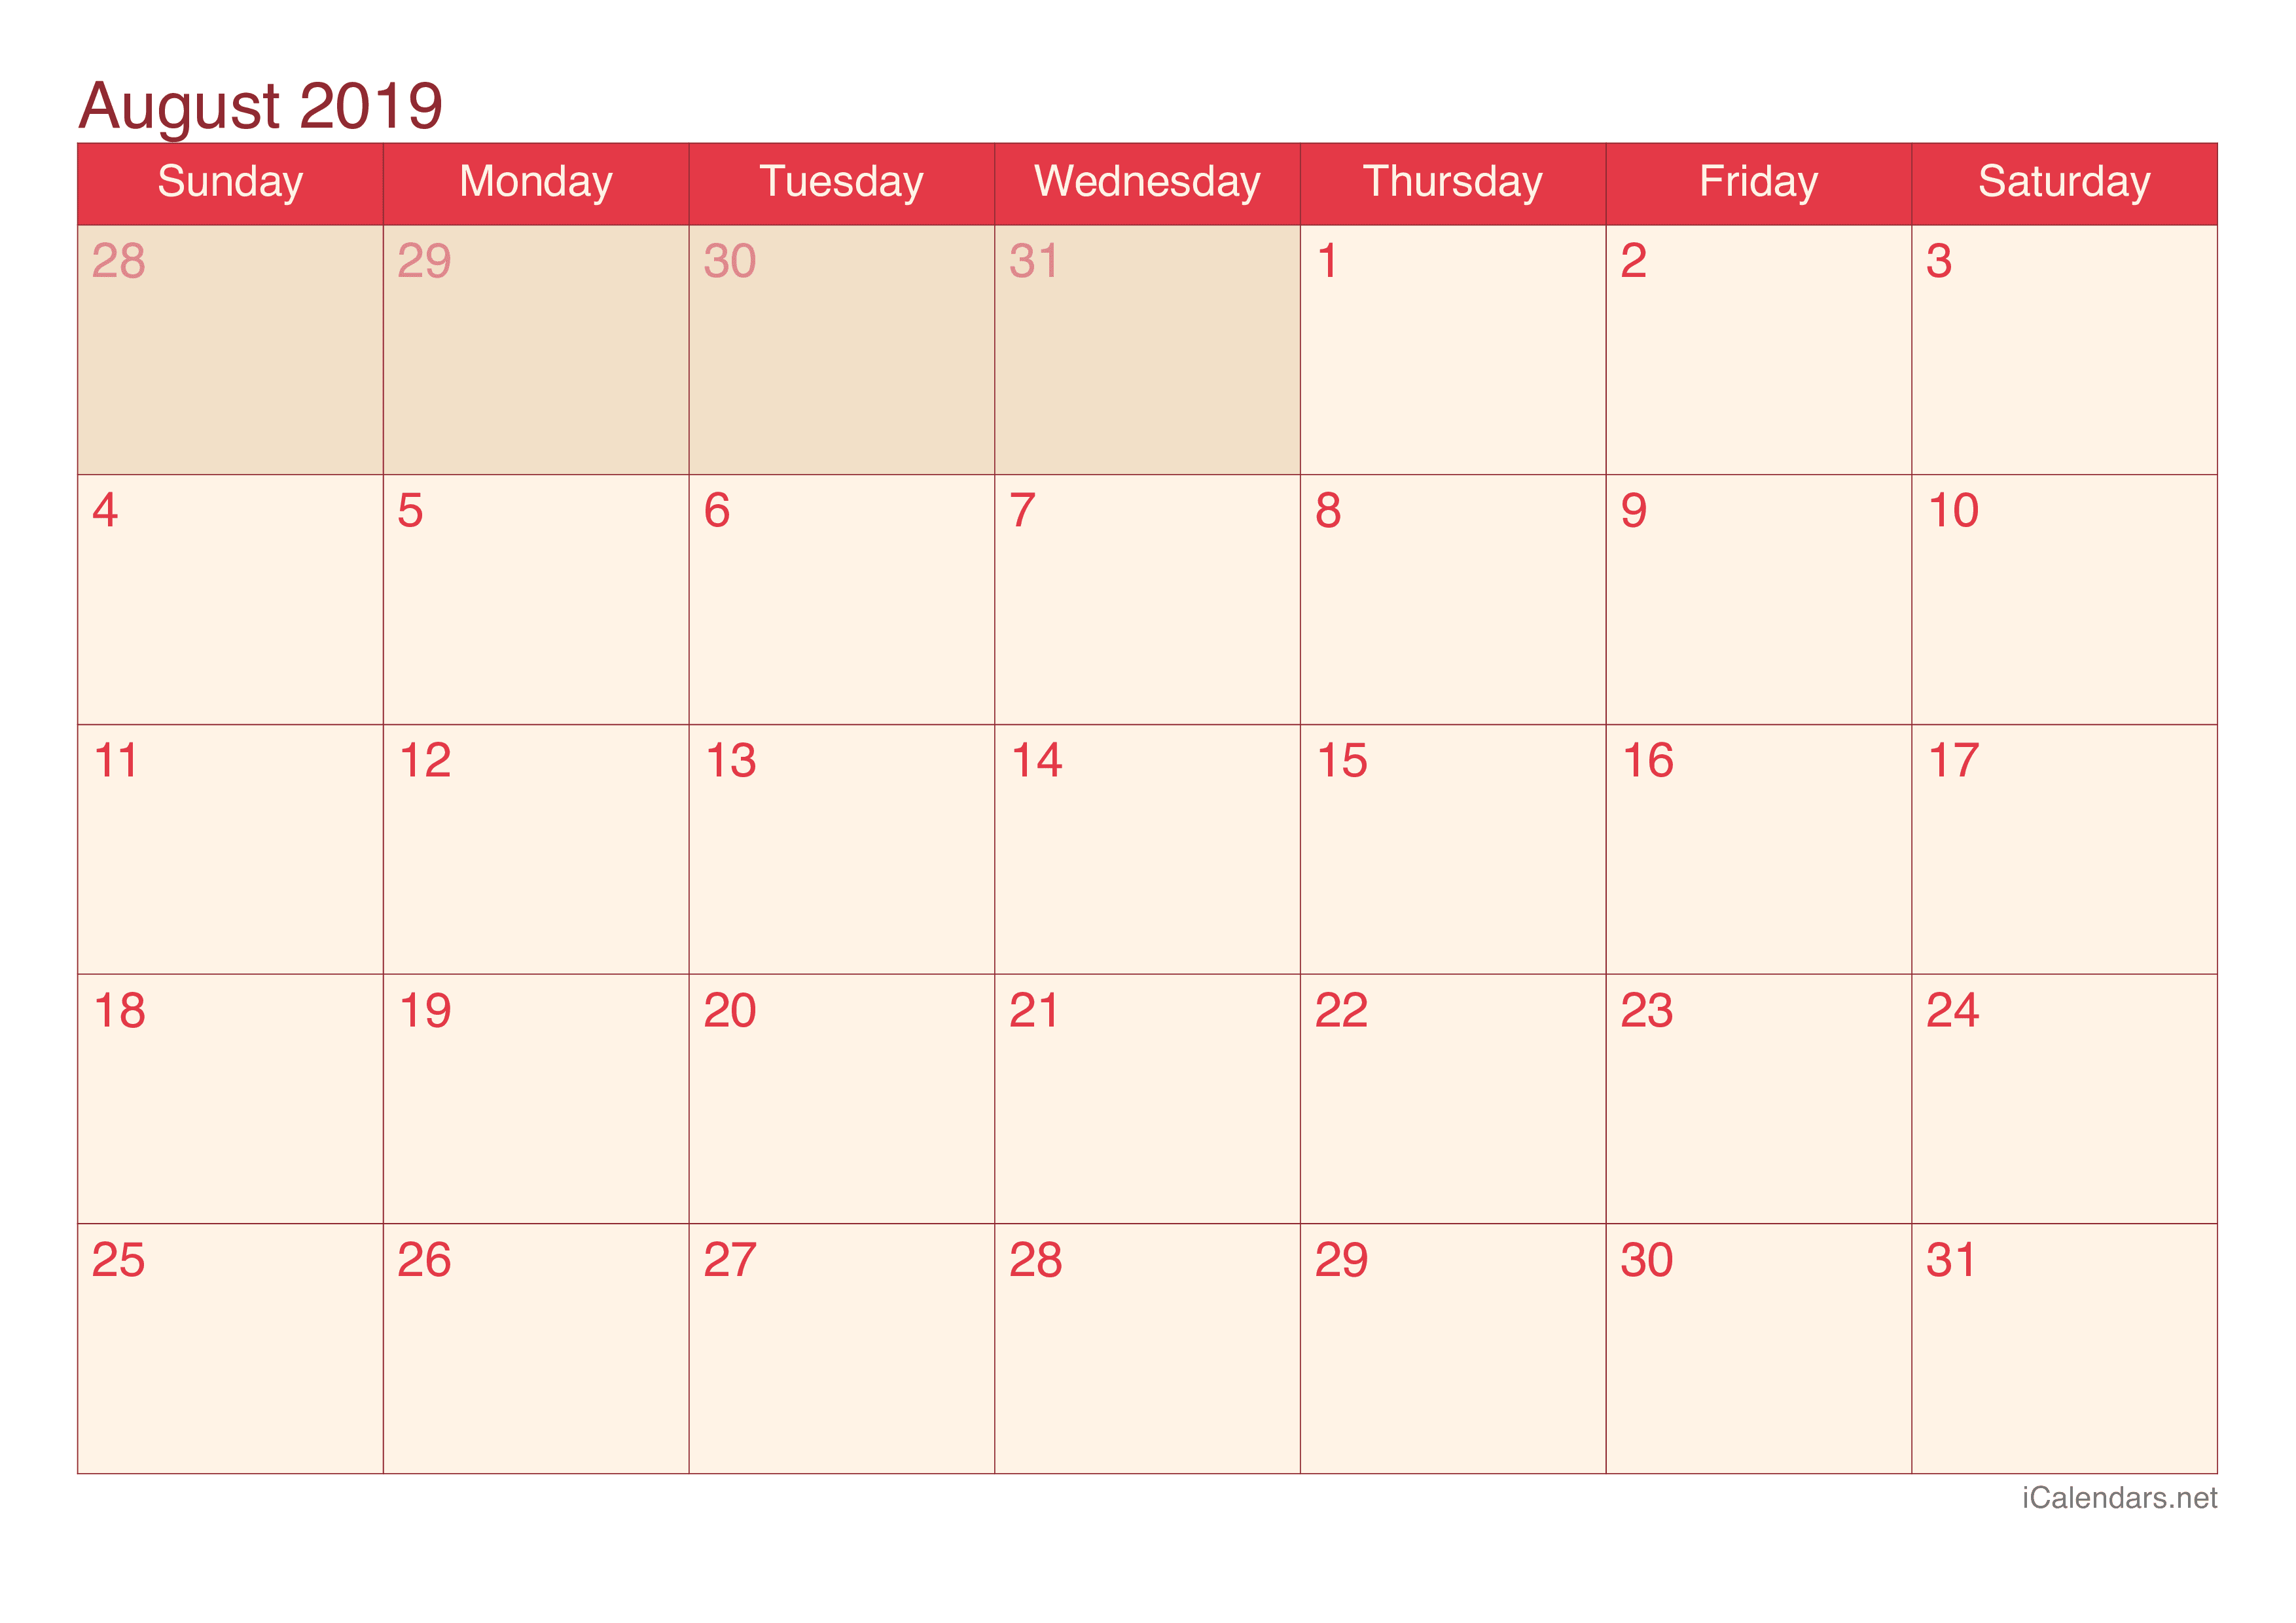 2019 August Calendar - Cherry